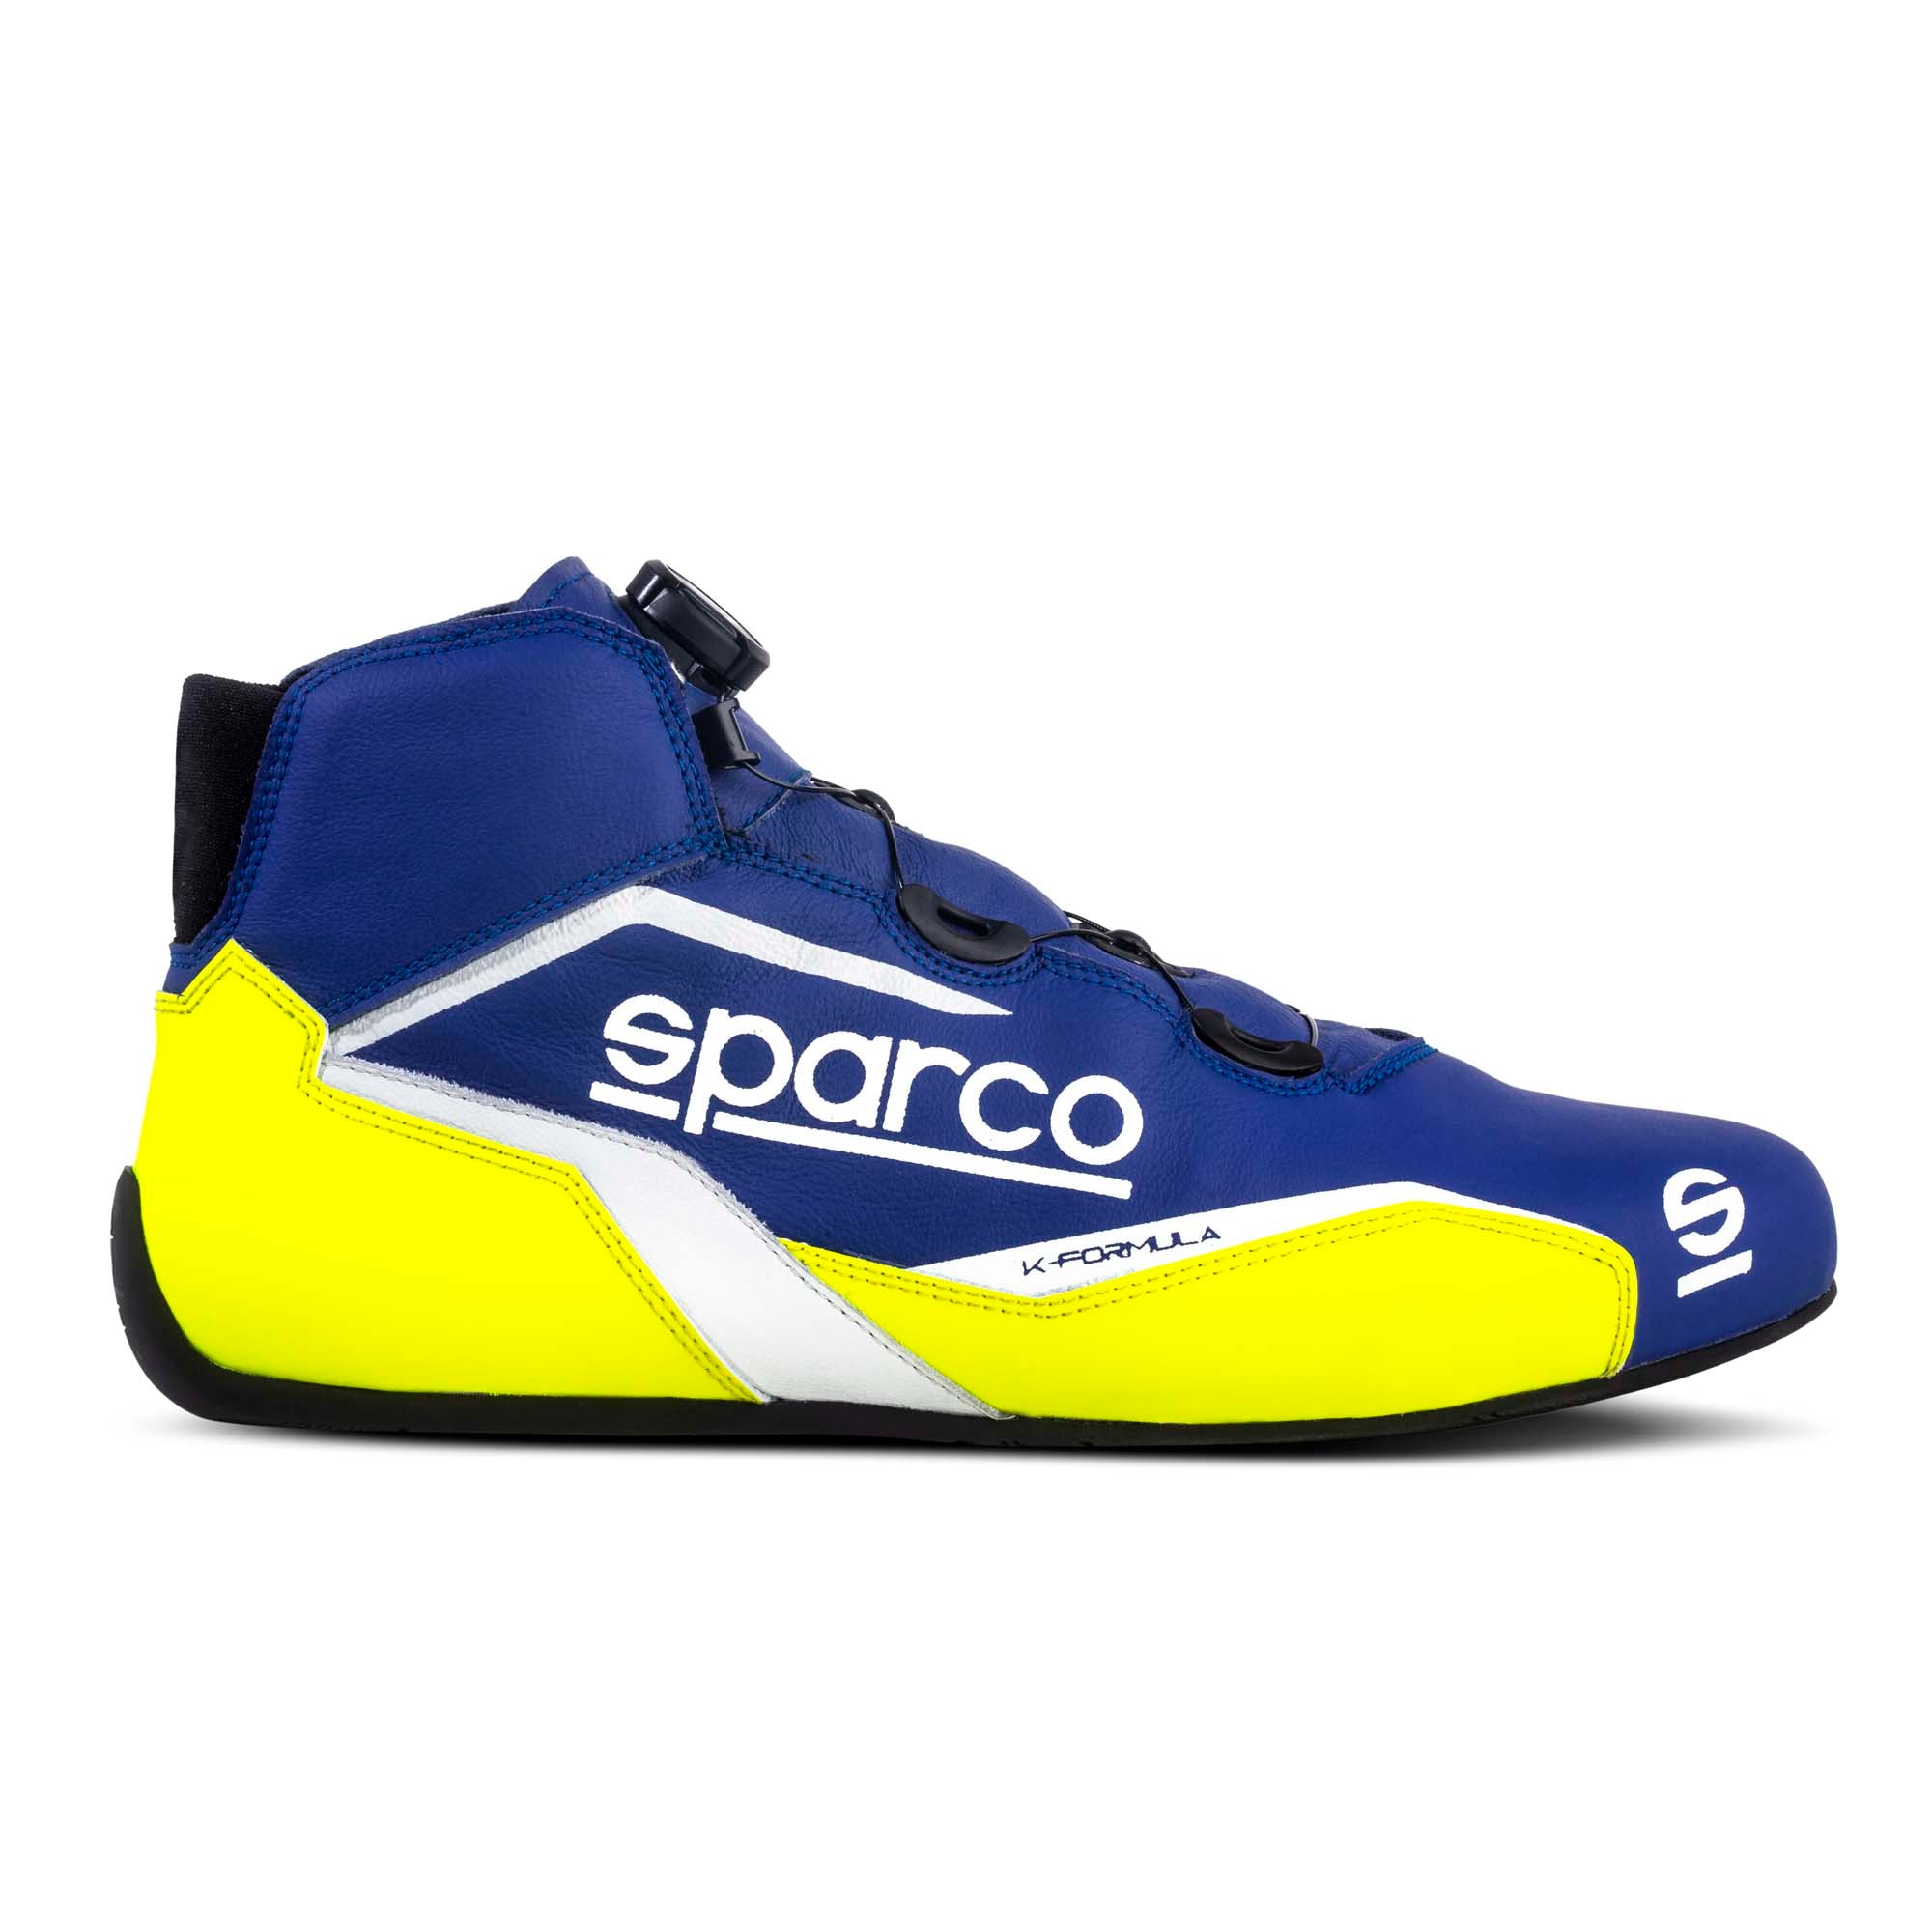 Sparco K-Formula Karting Shoes